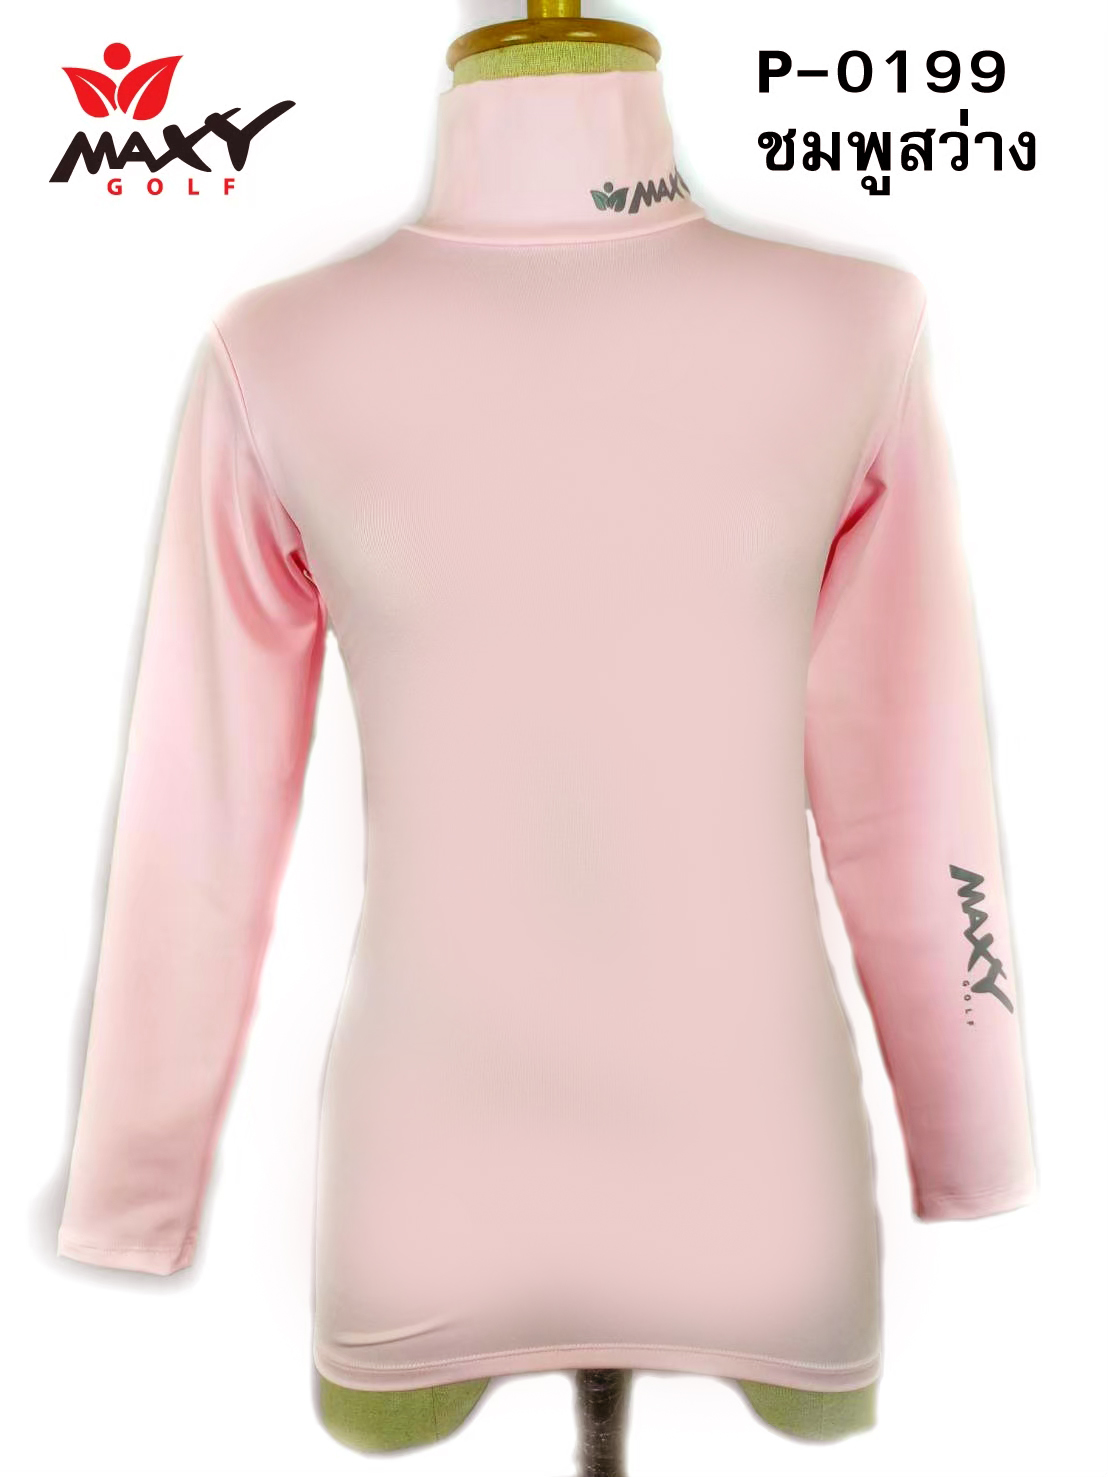 เสื้อบอดี้ฟิตกันแดด(คอเต่า) สีพื้น สำหรับผู้หญิง ยี่ห้อ MAXY GOLF (รหัส P-0199 สีชมพูสว่าง)